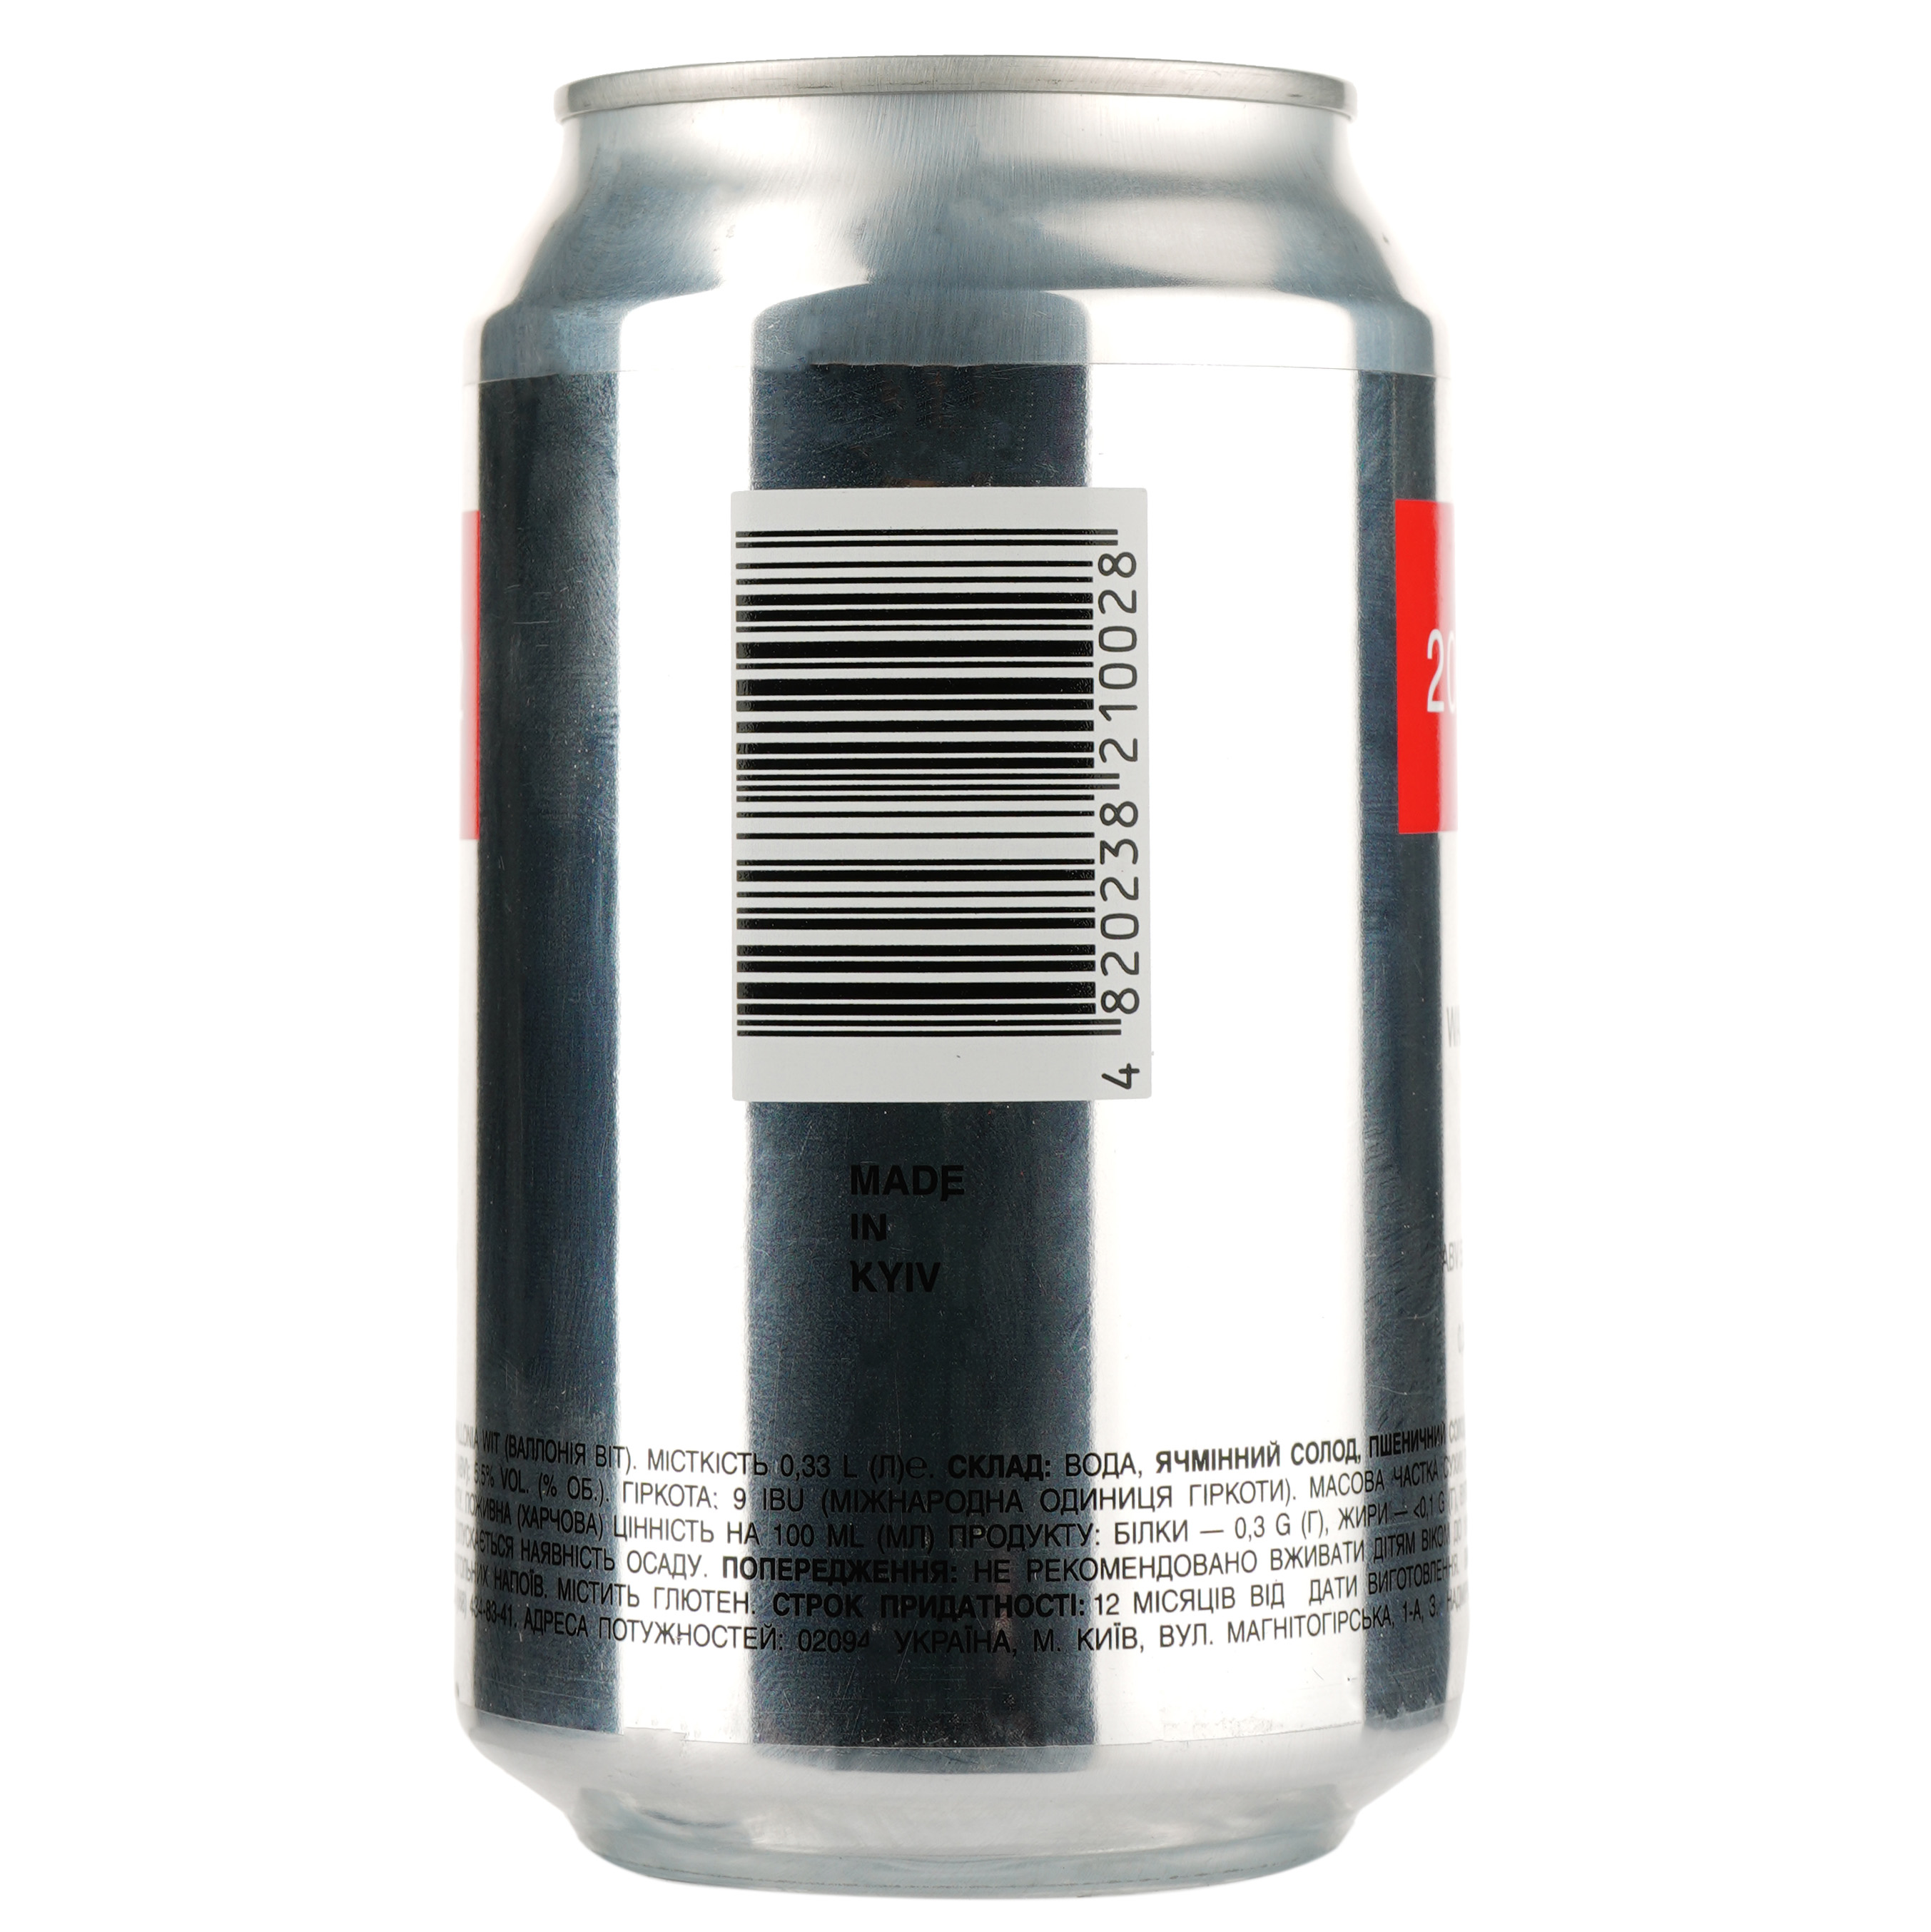 Пиво 2085-2 Wallonia Wit, светлое, нефильтрованное, 5,5%, ж/б, 0,33 л (842348) - фото 2